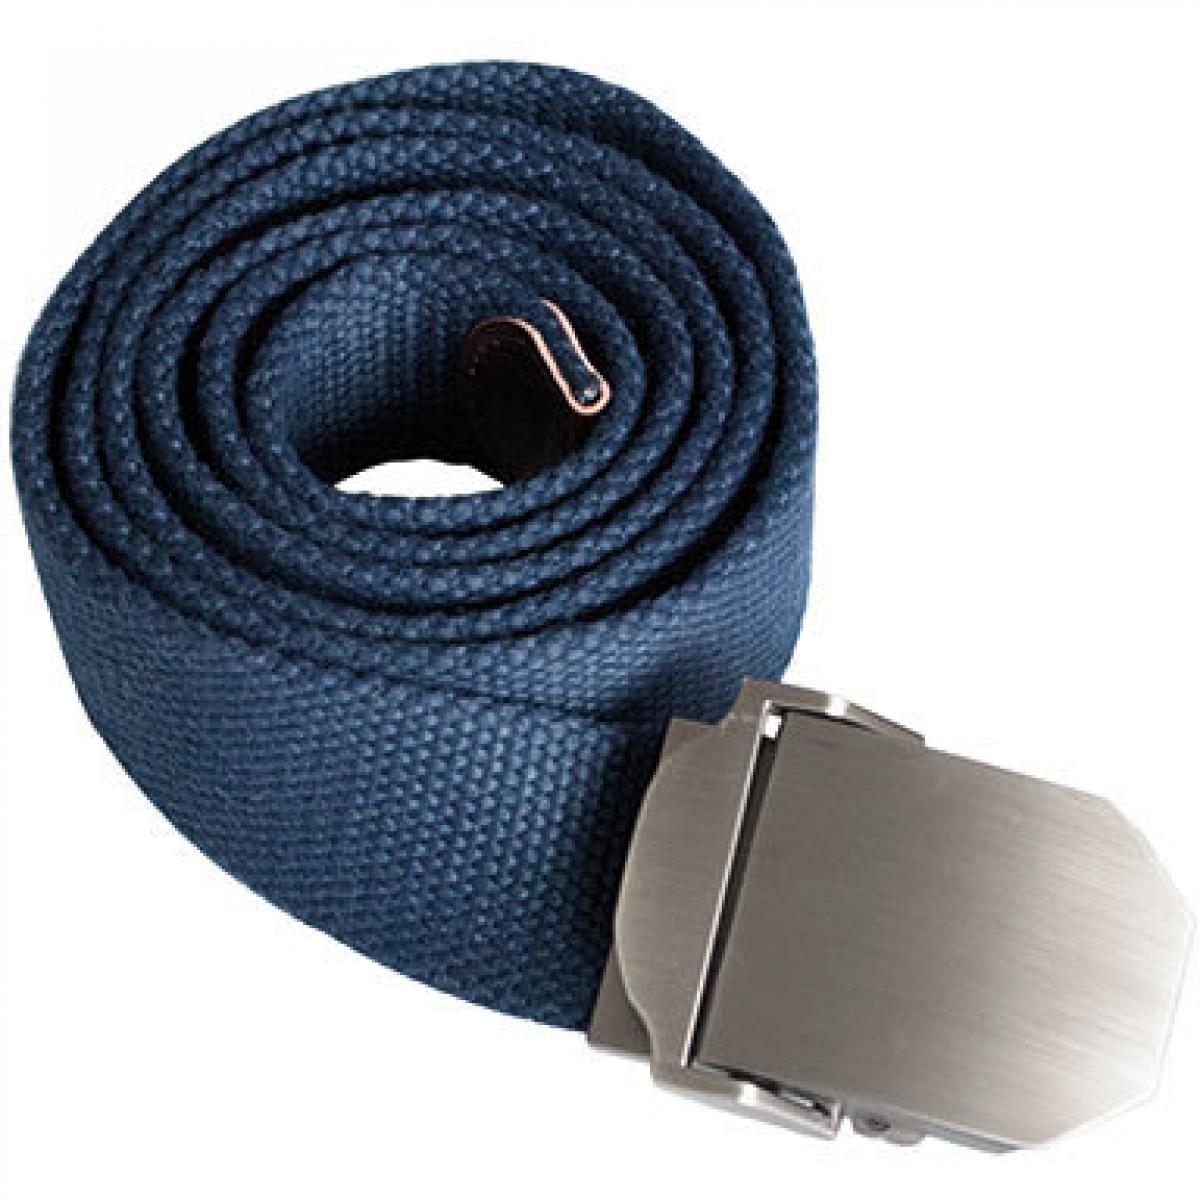 Hersteller: Korntex Herstellernummer: KXWWBN Artikelbezeichnung: Workwear Belt Classic, 140 cm L, selbst kürzbar, B 4 cm Farbe: Navy